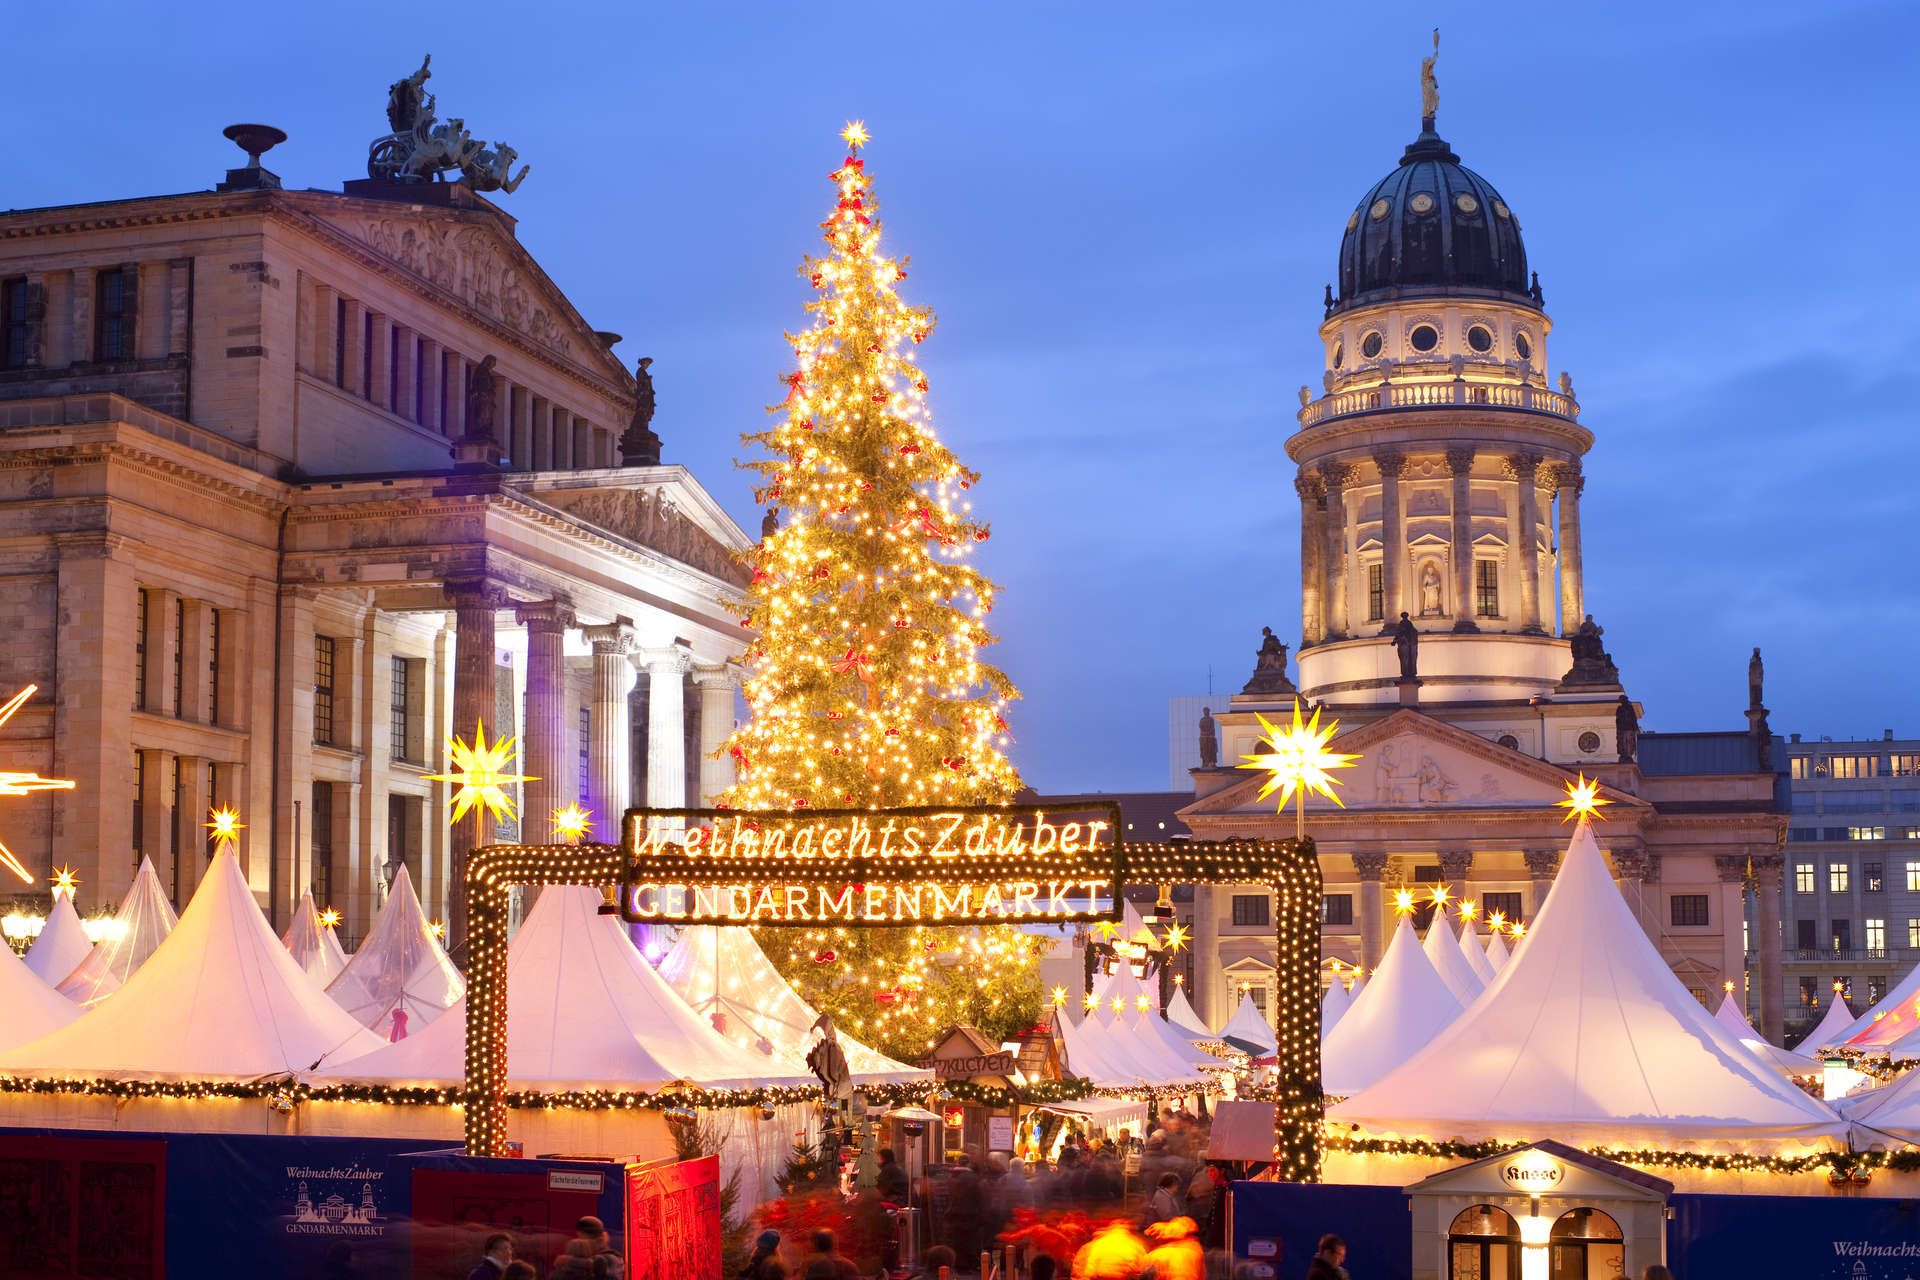 إذا كنت تتشوق كثيرًا لأجواء الكريسماس المبهجة، فستجد أجواء برلين في نوفمبر الأجواء المثالية لك